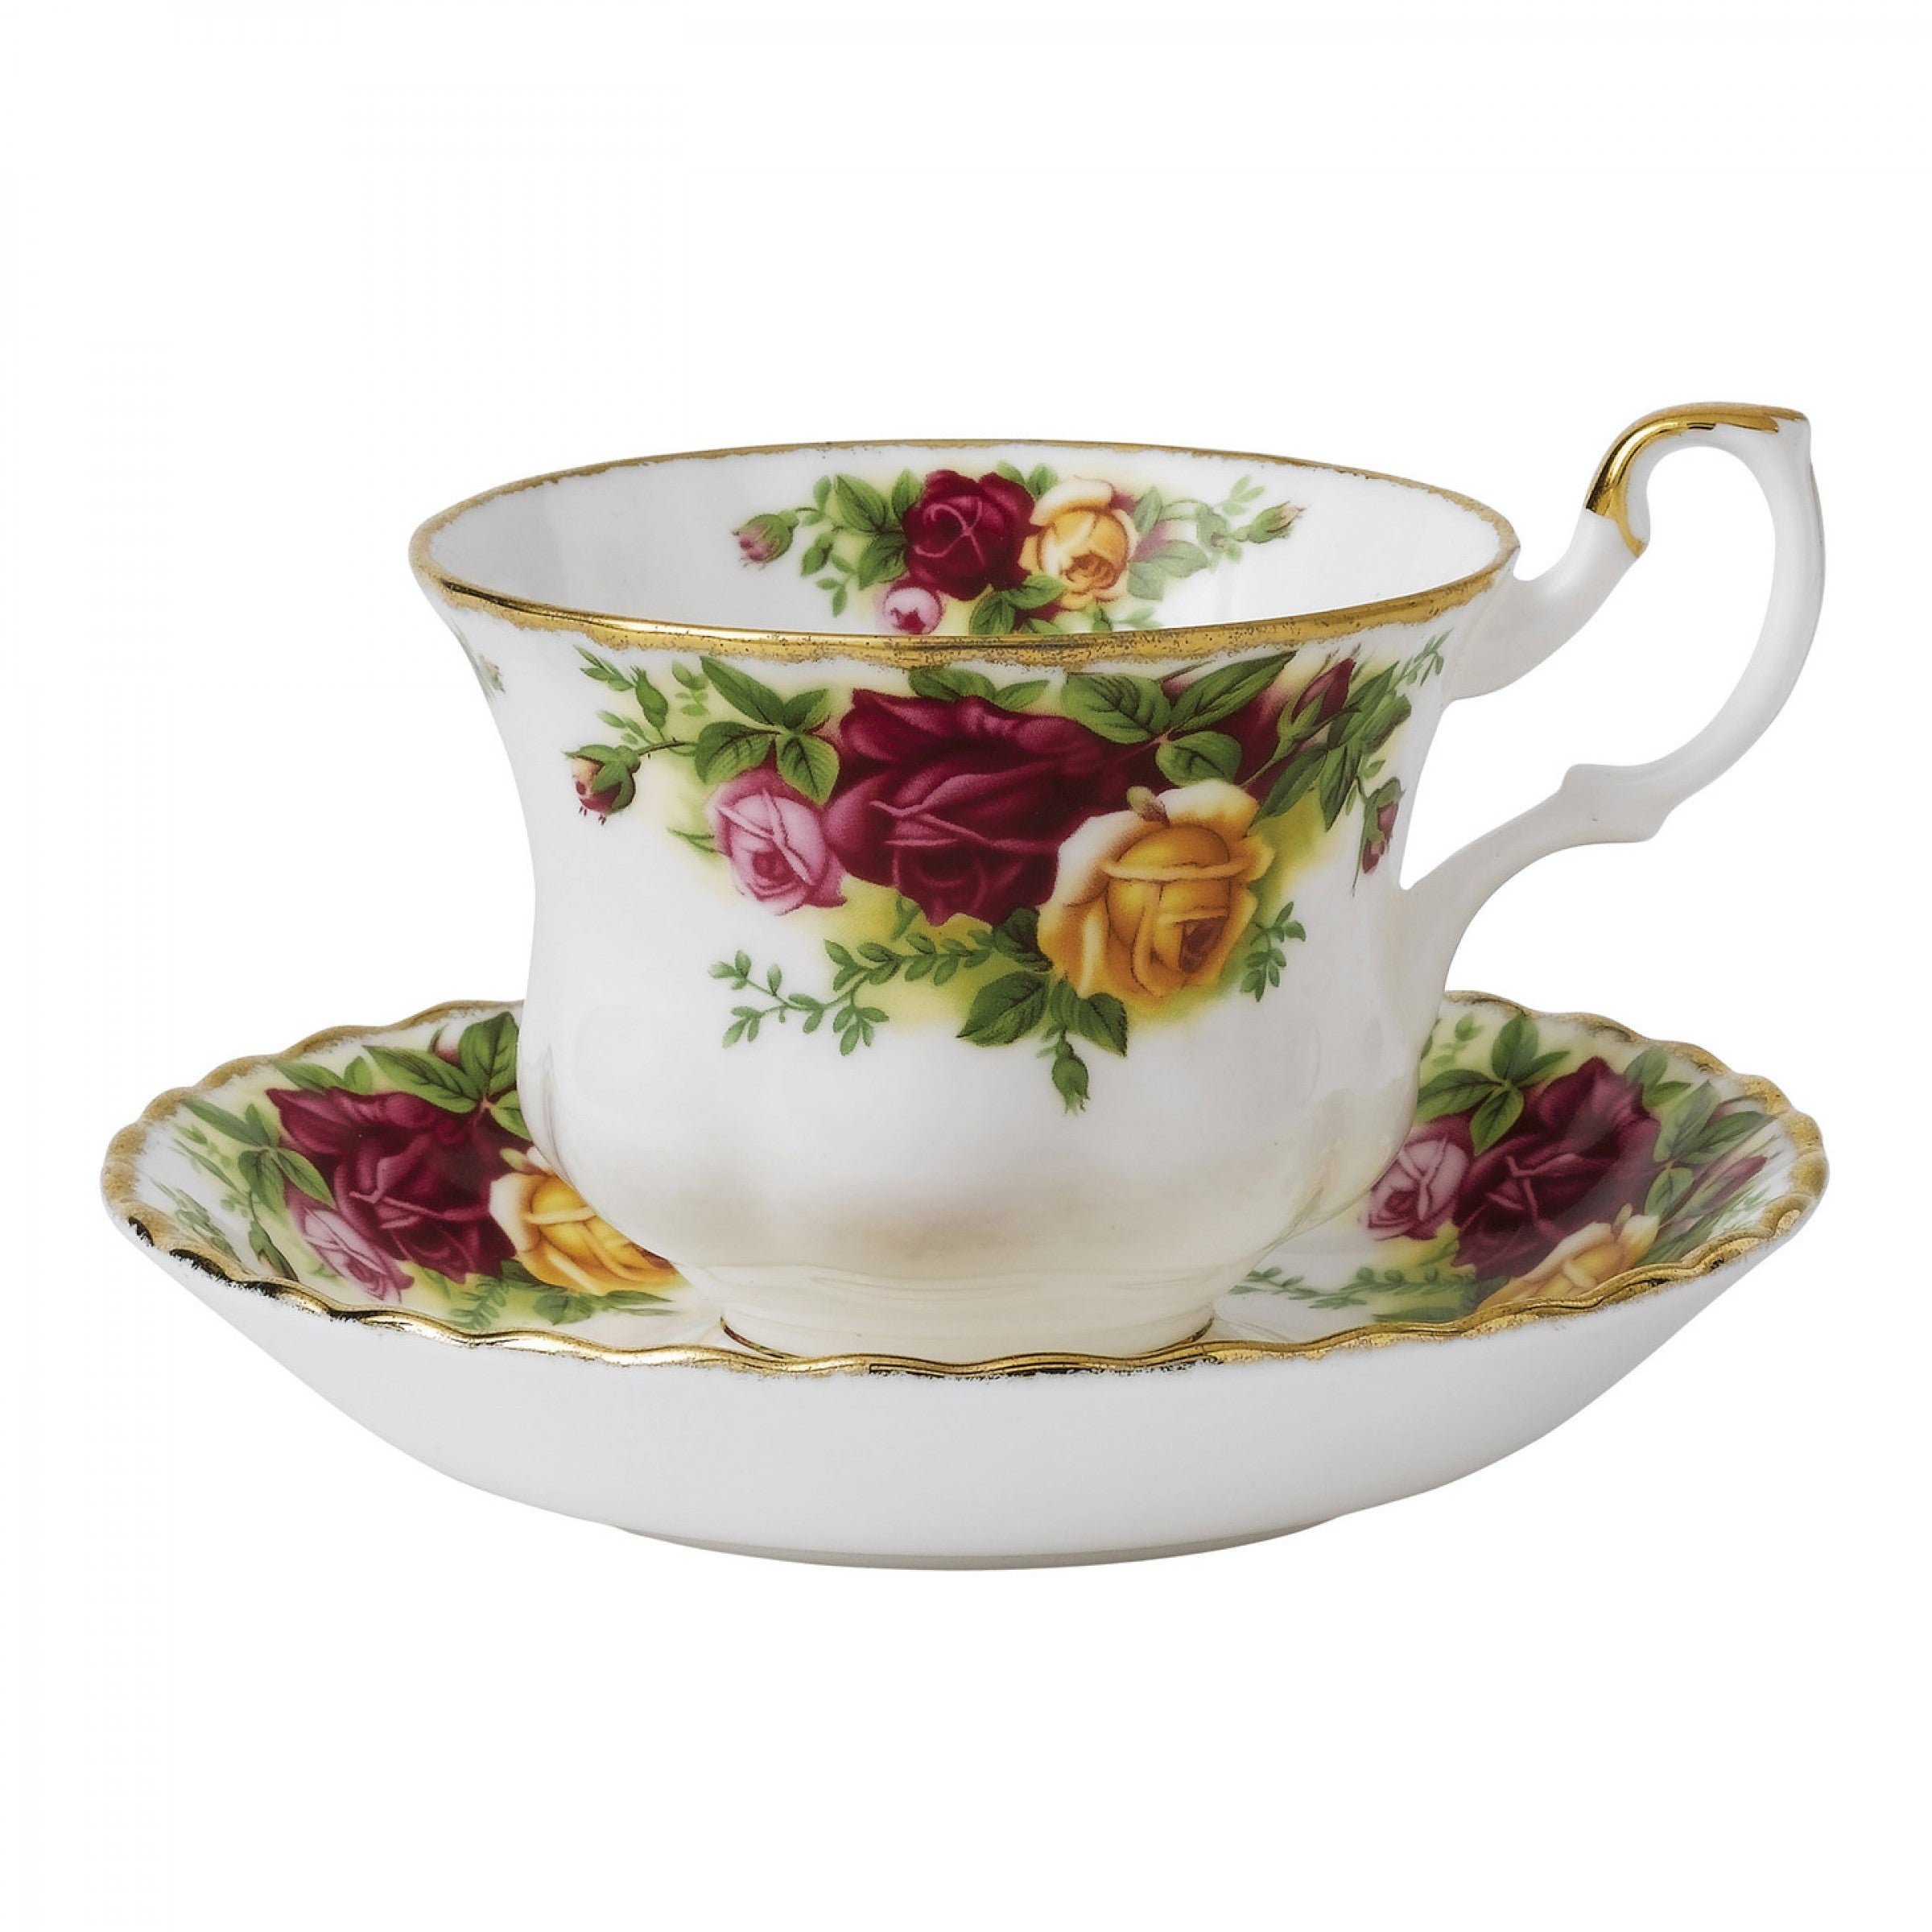 Чашки с блюдцами фото. Чашка с блюдцем Royal Albert пара чайная розы старой Англии iolcor04698. Royal Albert чашка с блюдцем.